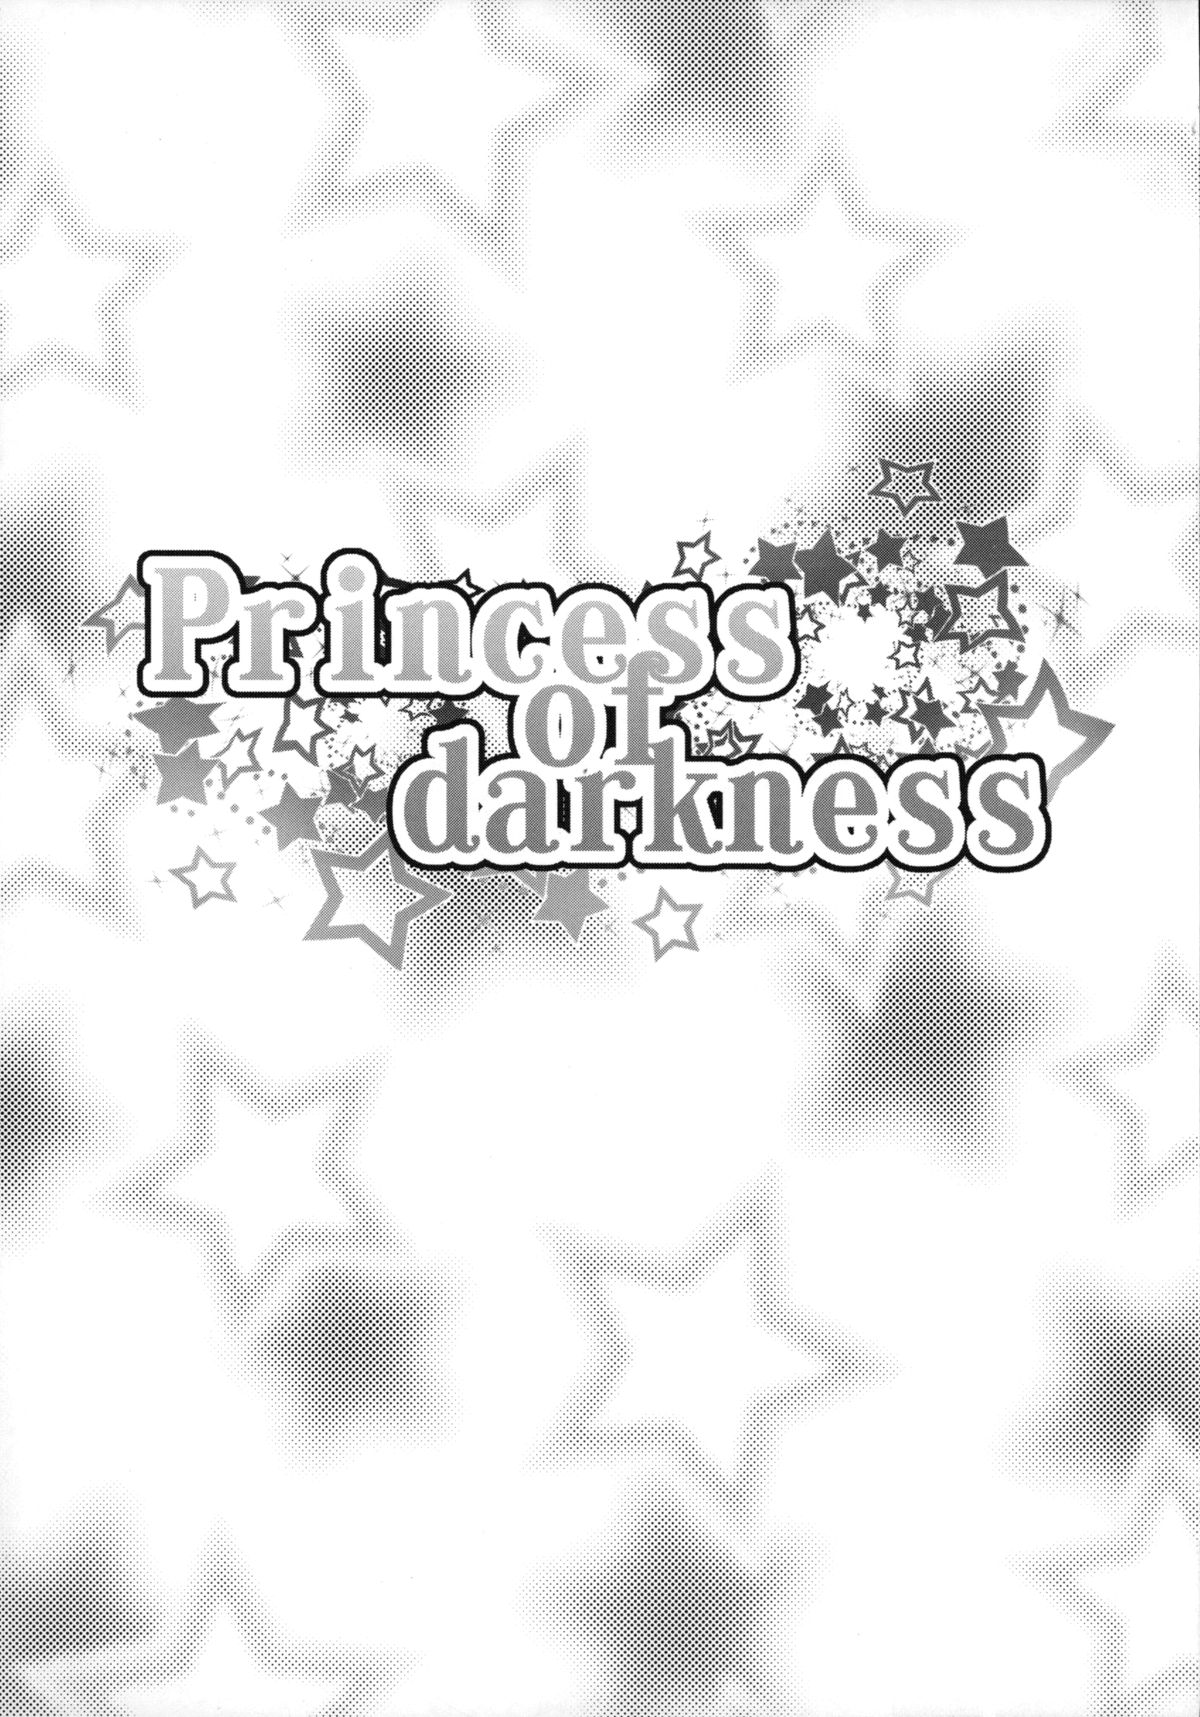 (C88) [コンディメントは8分目 (前島龍)] Princess of darkness (Go! プリンセスプリキュア) [英訳]